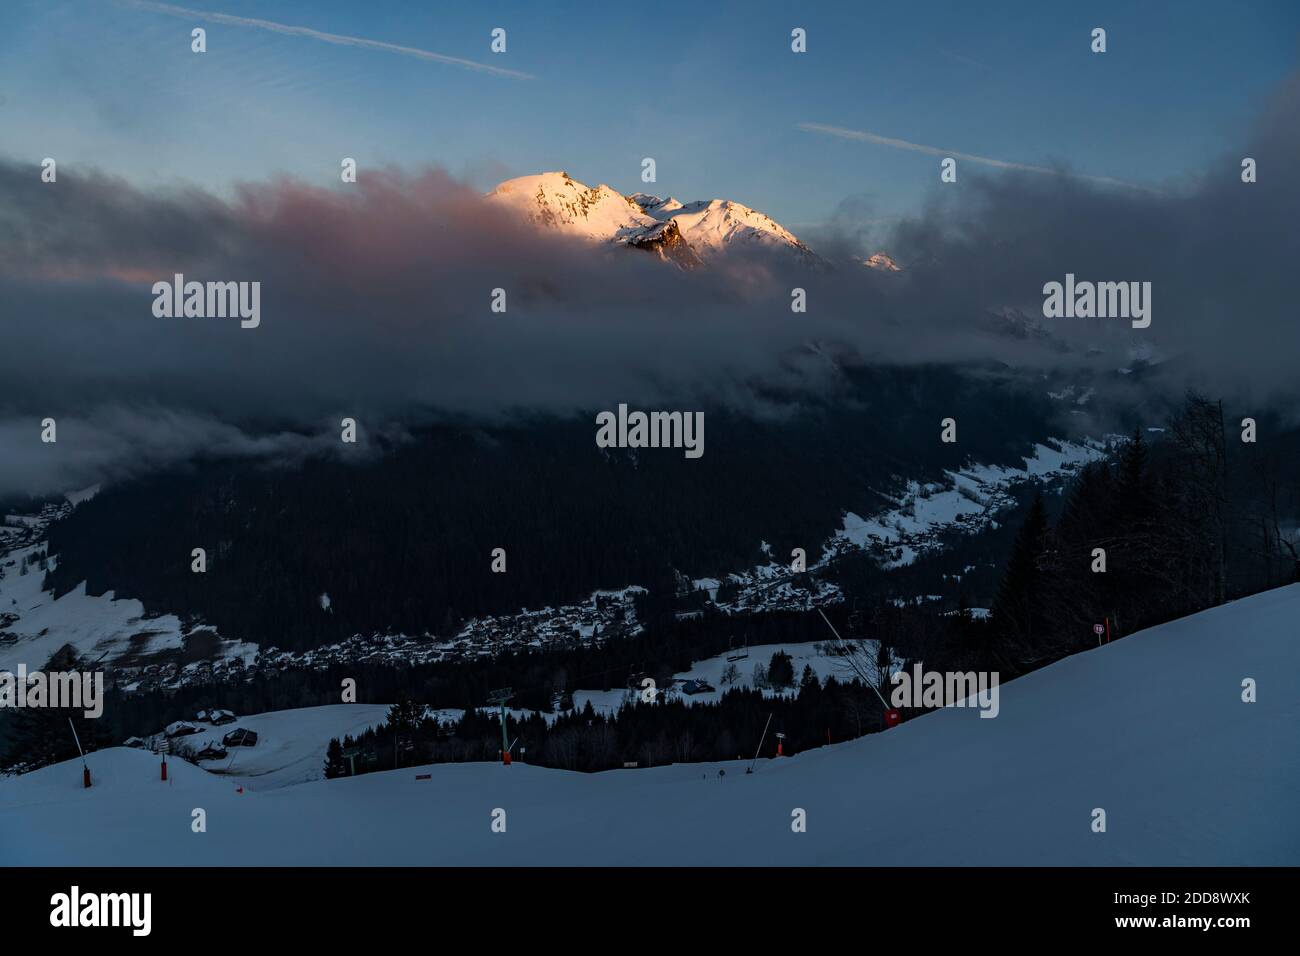 Belles montagnes enneigées avec un ciel spectaculaire au coucher du soleil à la station de ski de Morzine dans la chaîne de montagnes des Alpes de France, Europe Banque D'Images